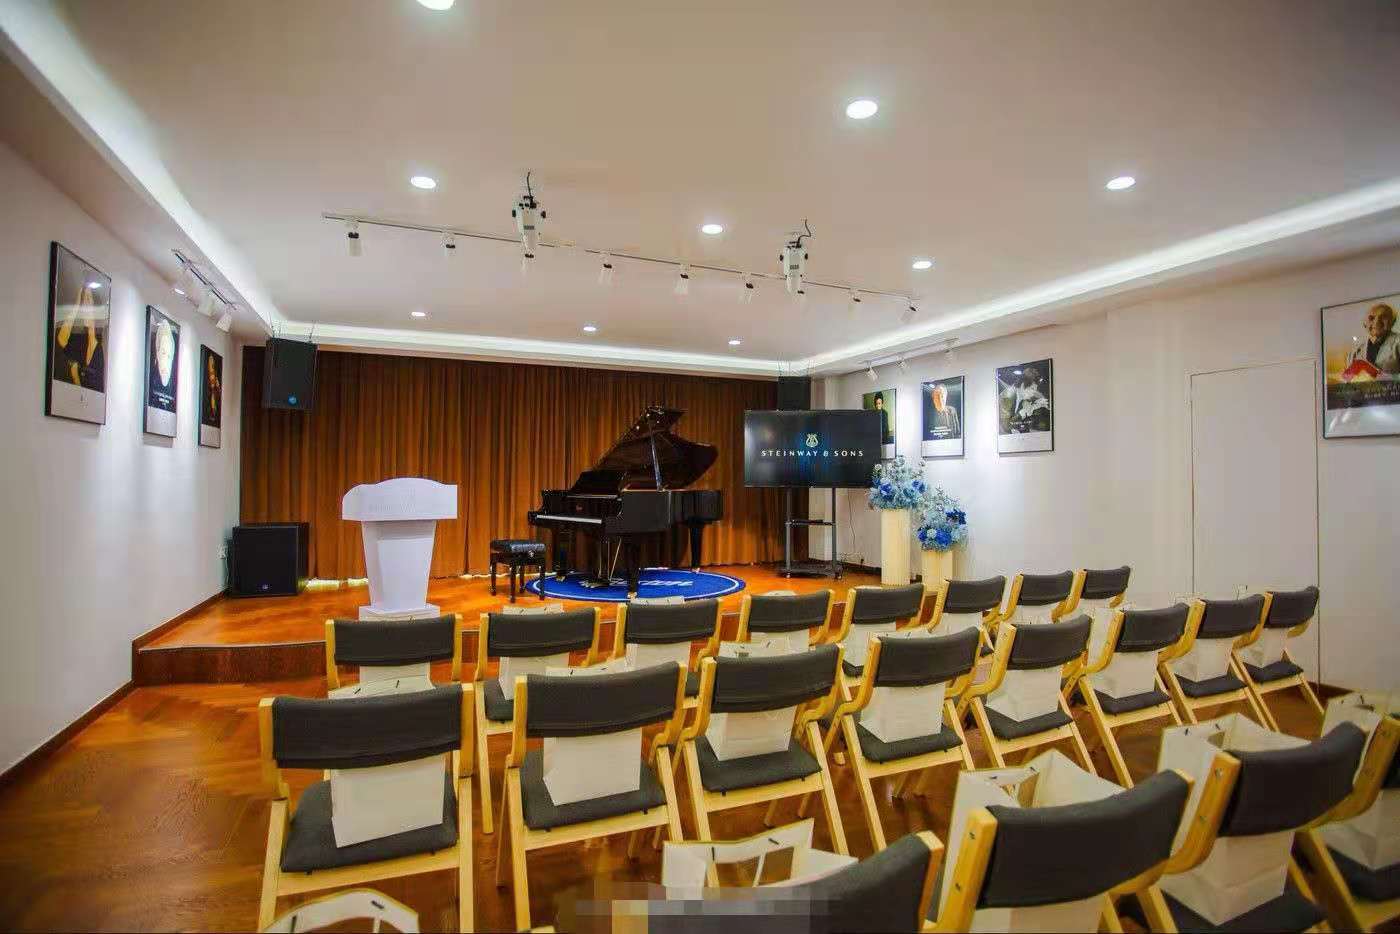 施坦威家族音乐厅苏州正式成立